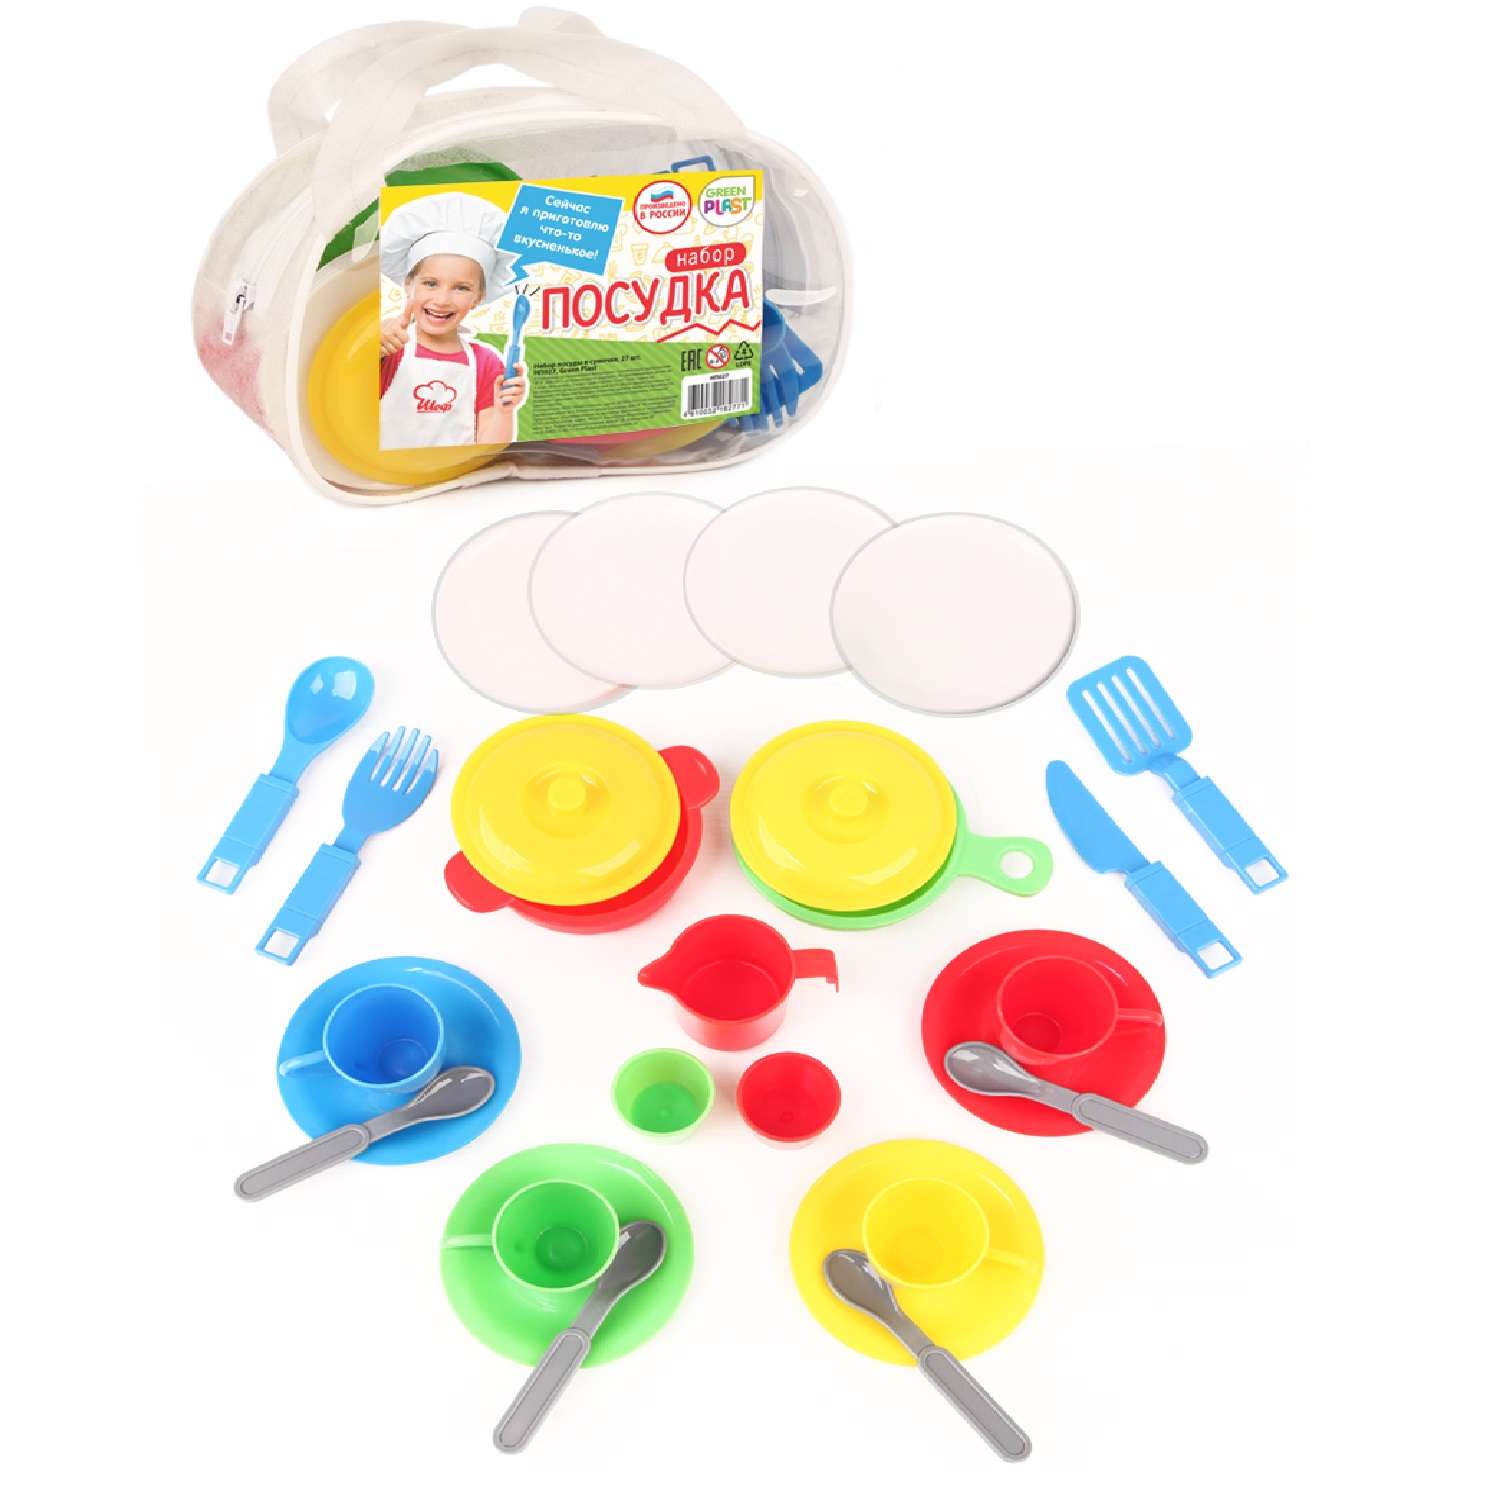 Игровой набор для кухни Green Plast игрушечная посуда детская в сумочке 27 элементов - фото 1